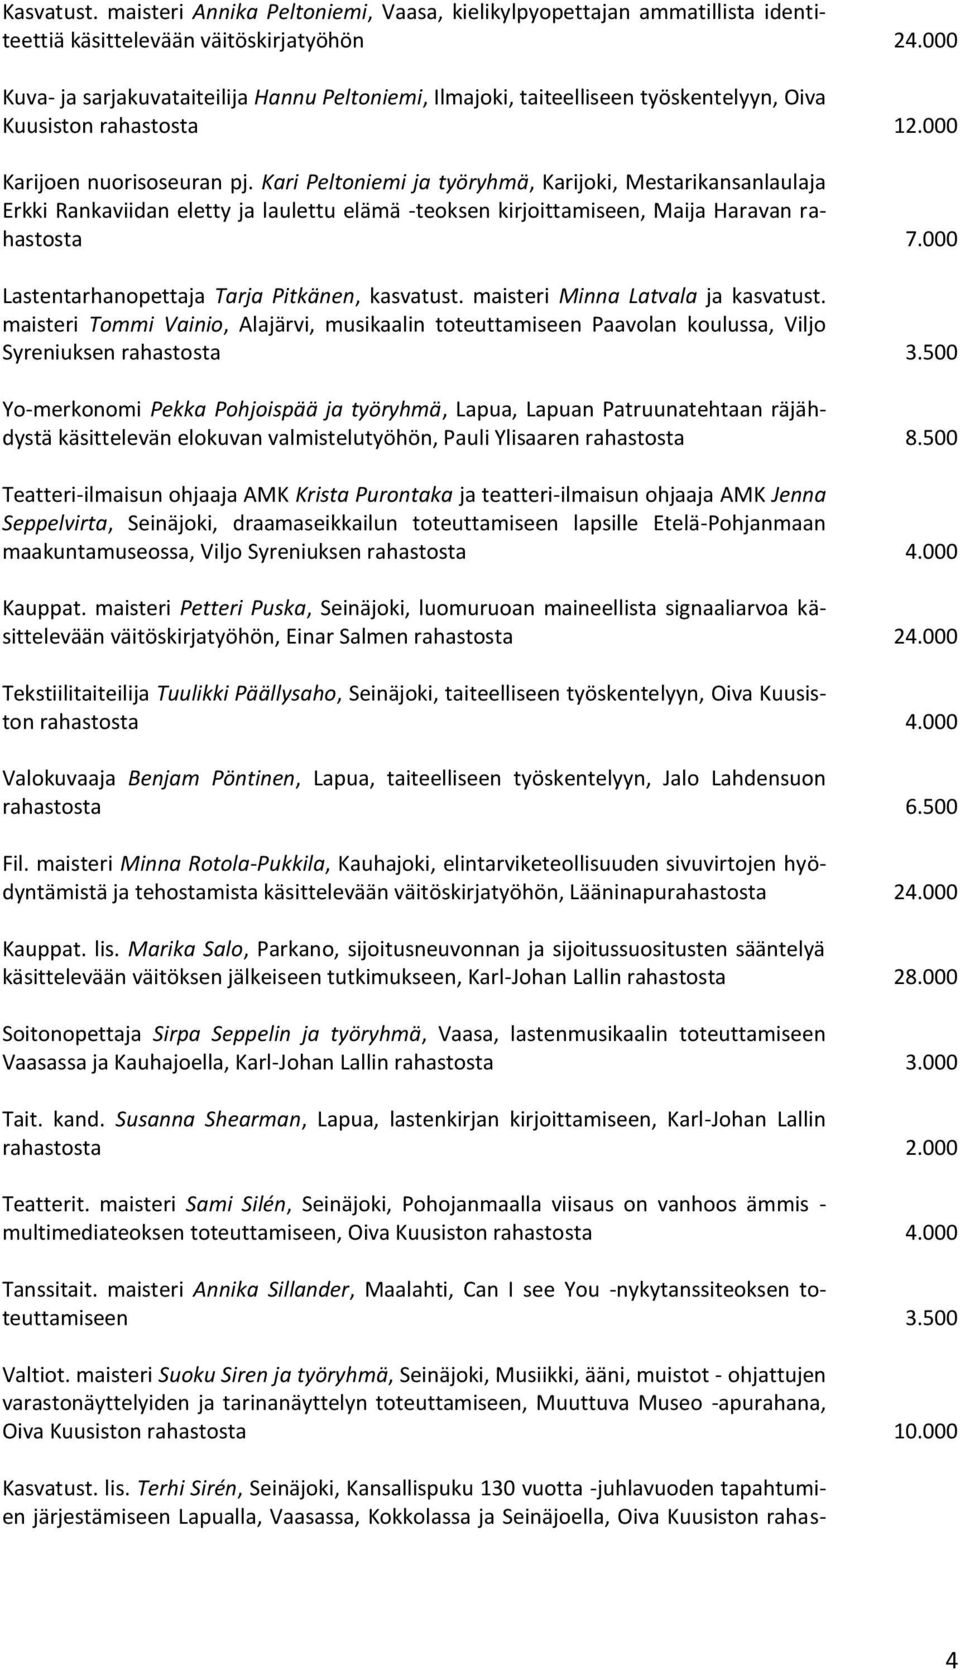 Kari Peltoniemi ja työryhmä, Karijoki, Mestarikansanlaulaja Erkki Rankaviidan eletty ja laulettu elämä -teoksen kirjoittamiseen, Maija Haravan rahastosta 7.